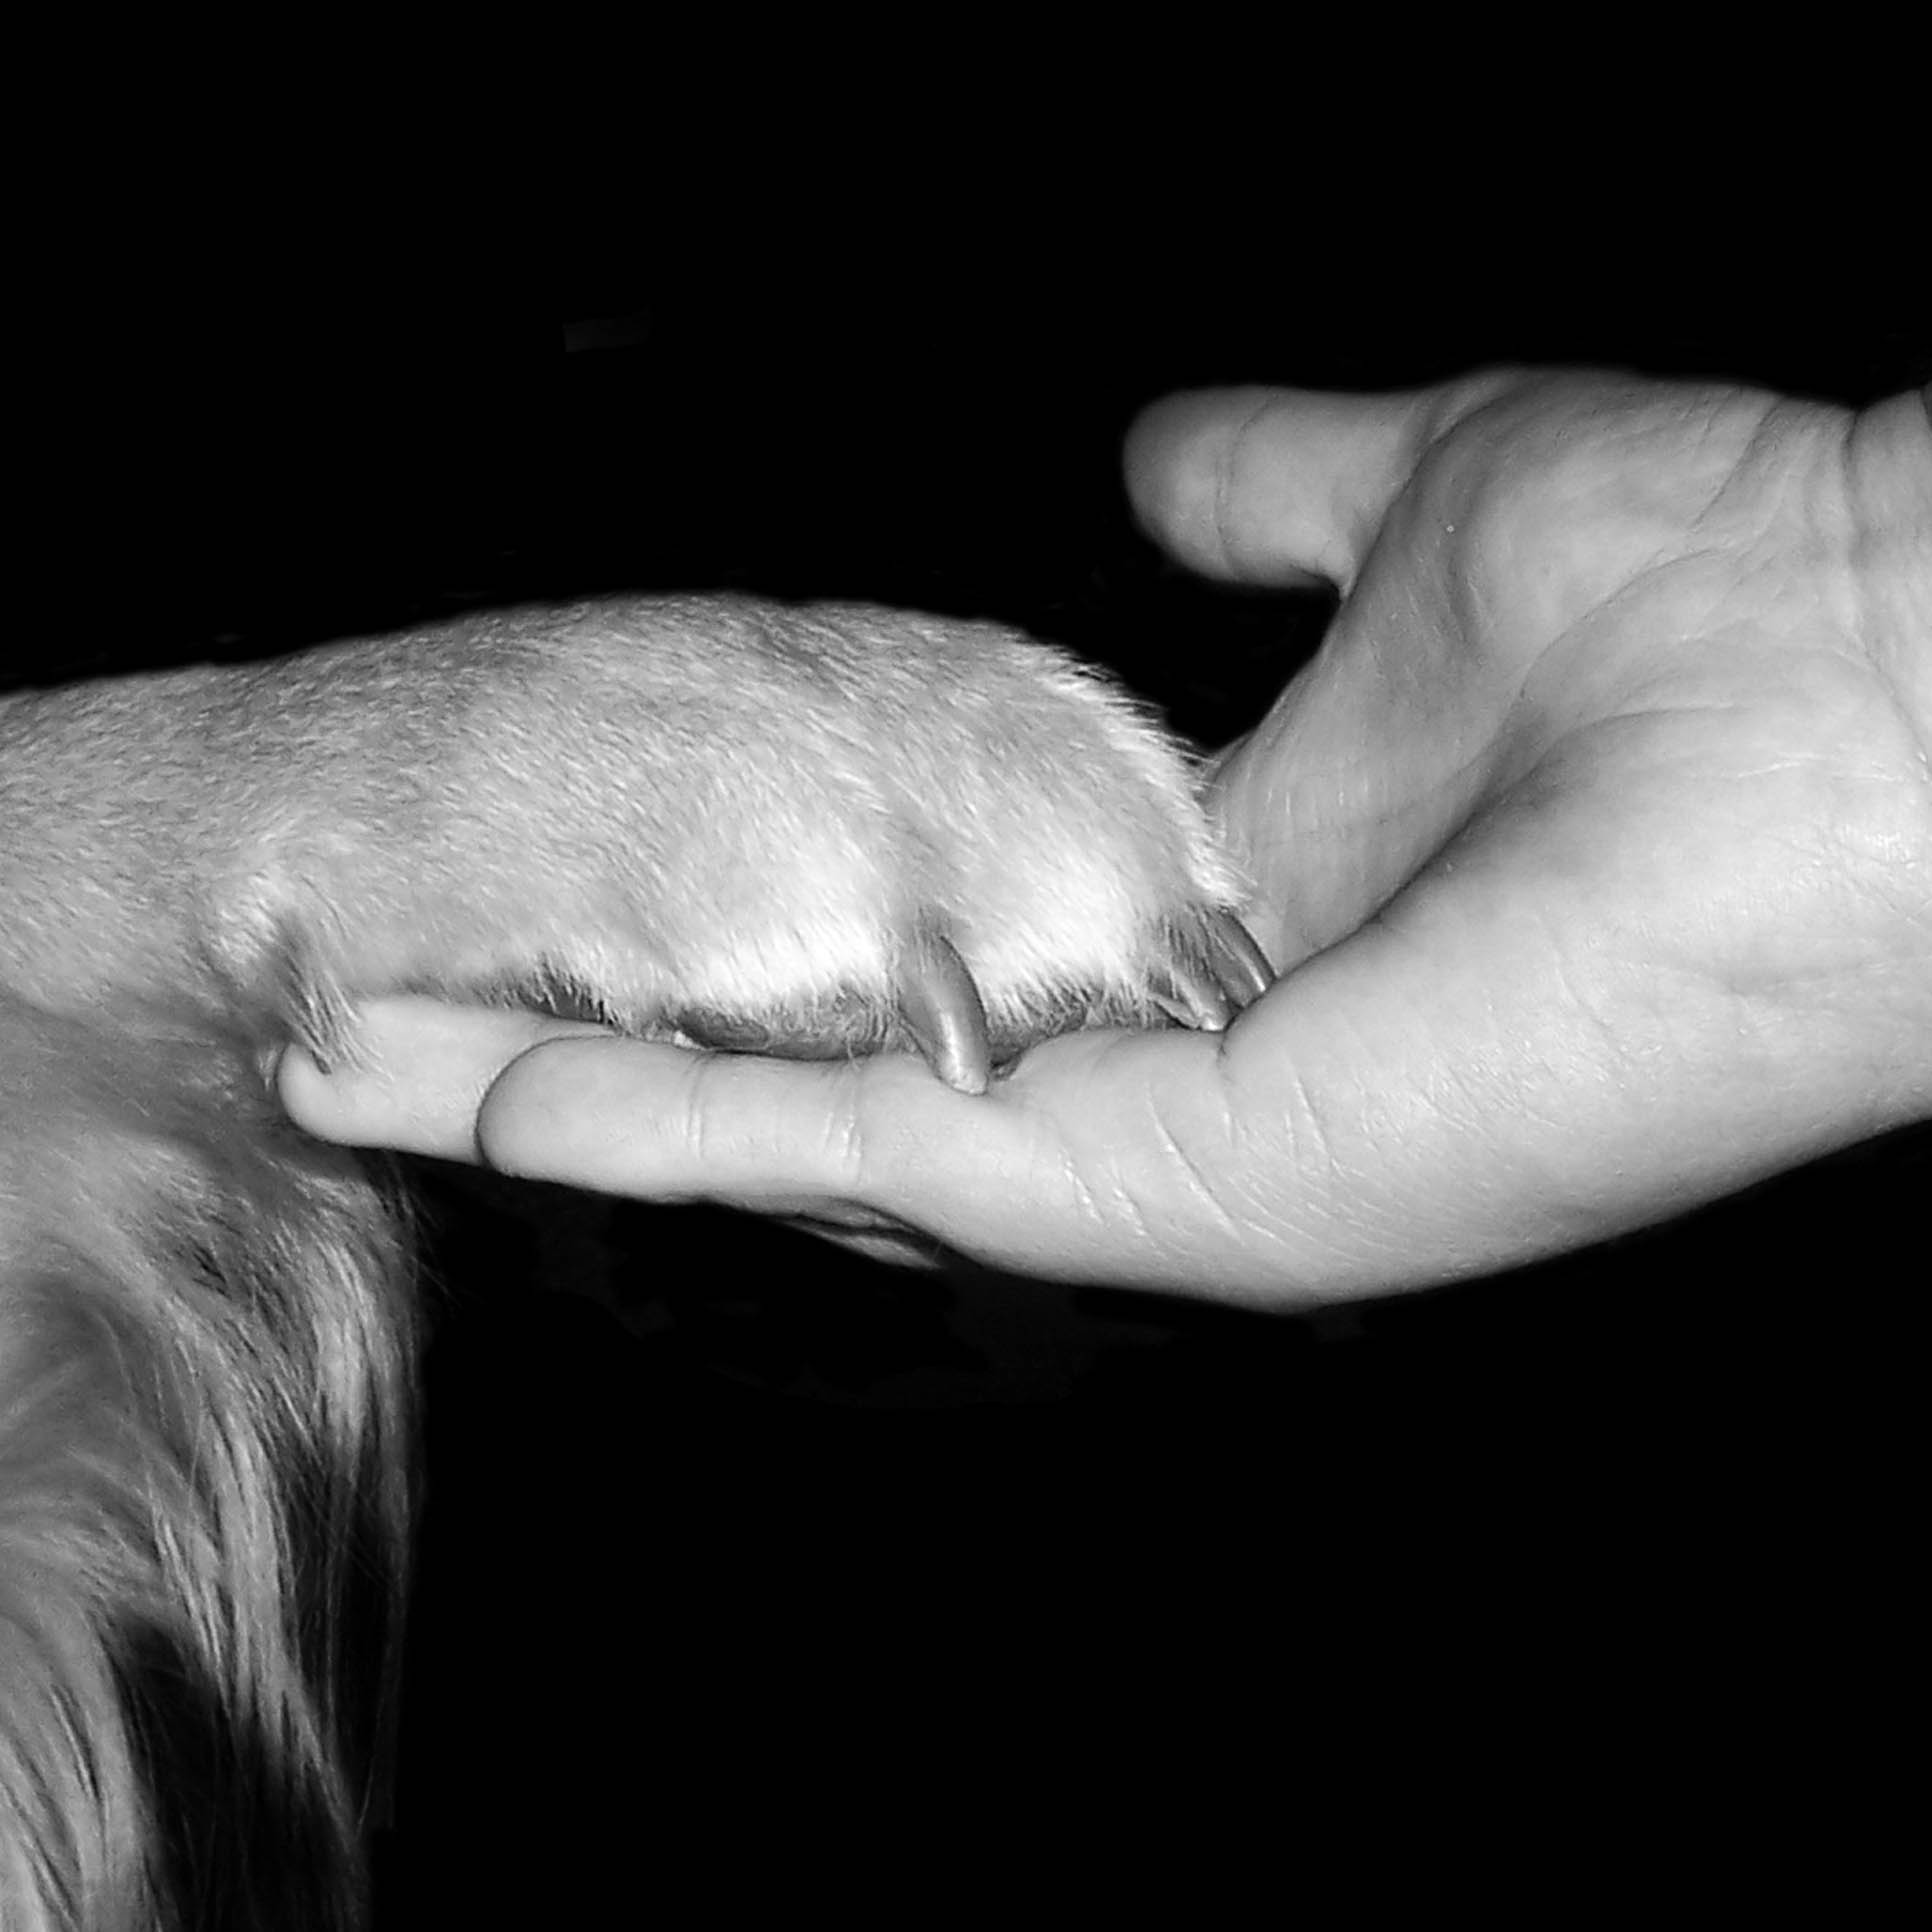 Hund legt Pfote in Hand des Menschen